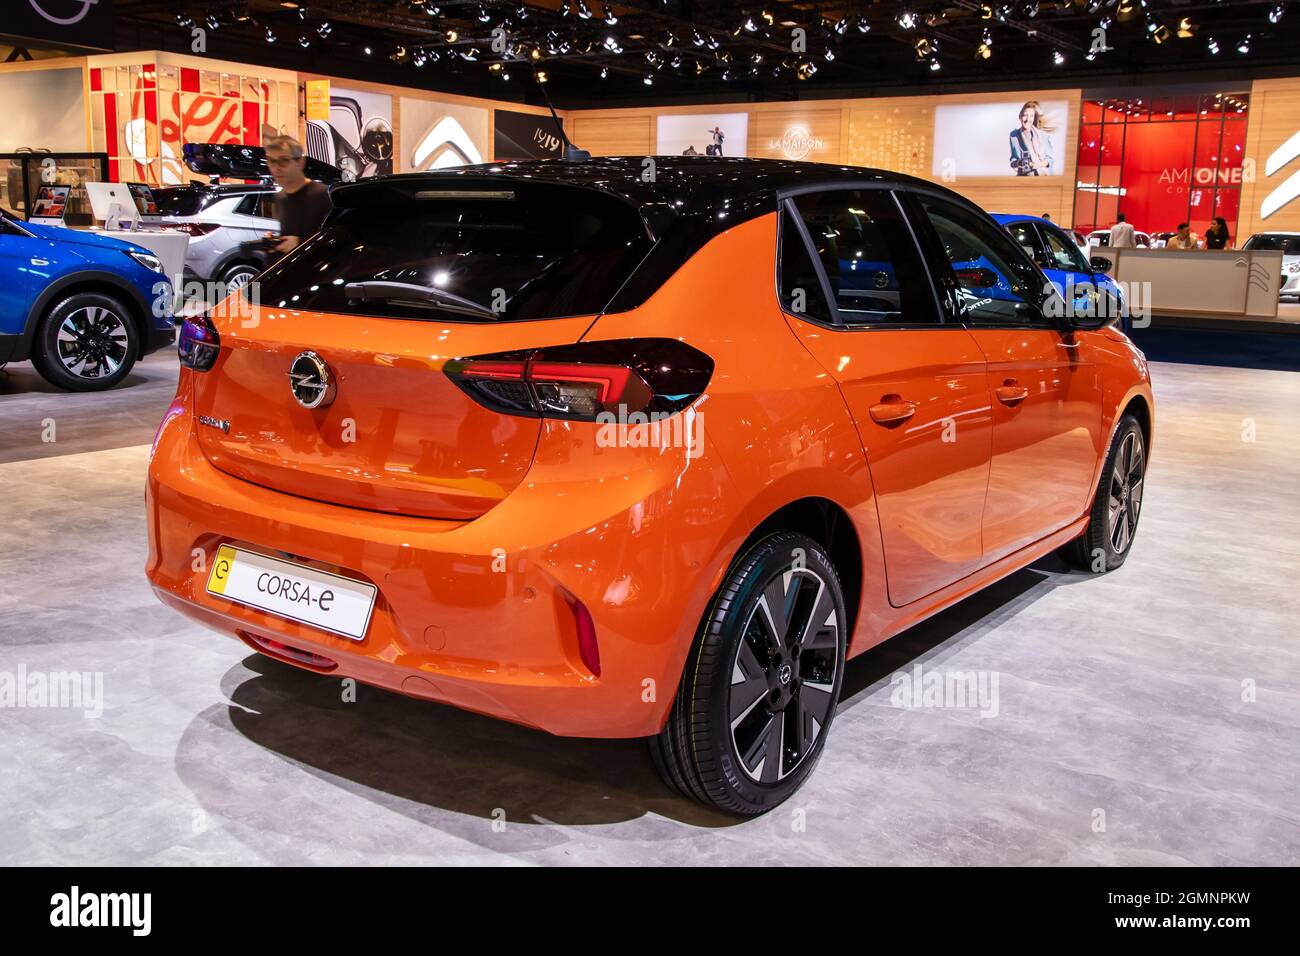 Opel Corsa-e nouveau modèle de voiture électrique présenté au salon automobile Autosalon 2020. Bruxelles, Belgique - 9 janvier 2020. Banque D'Images